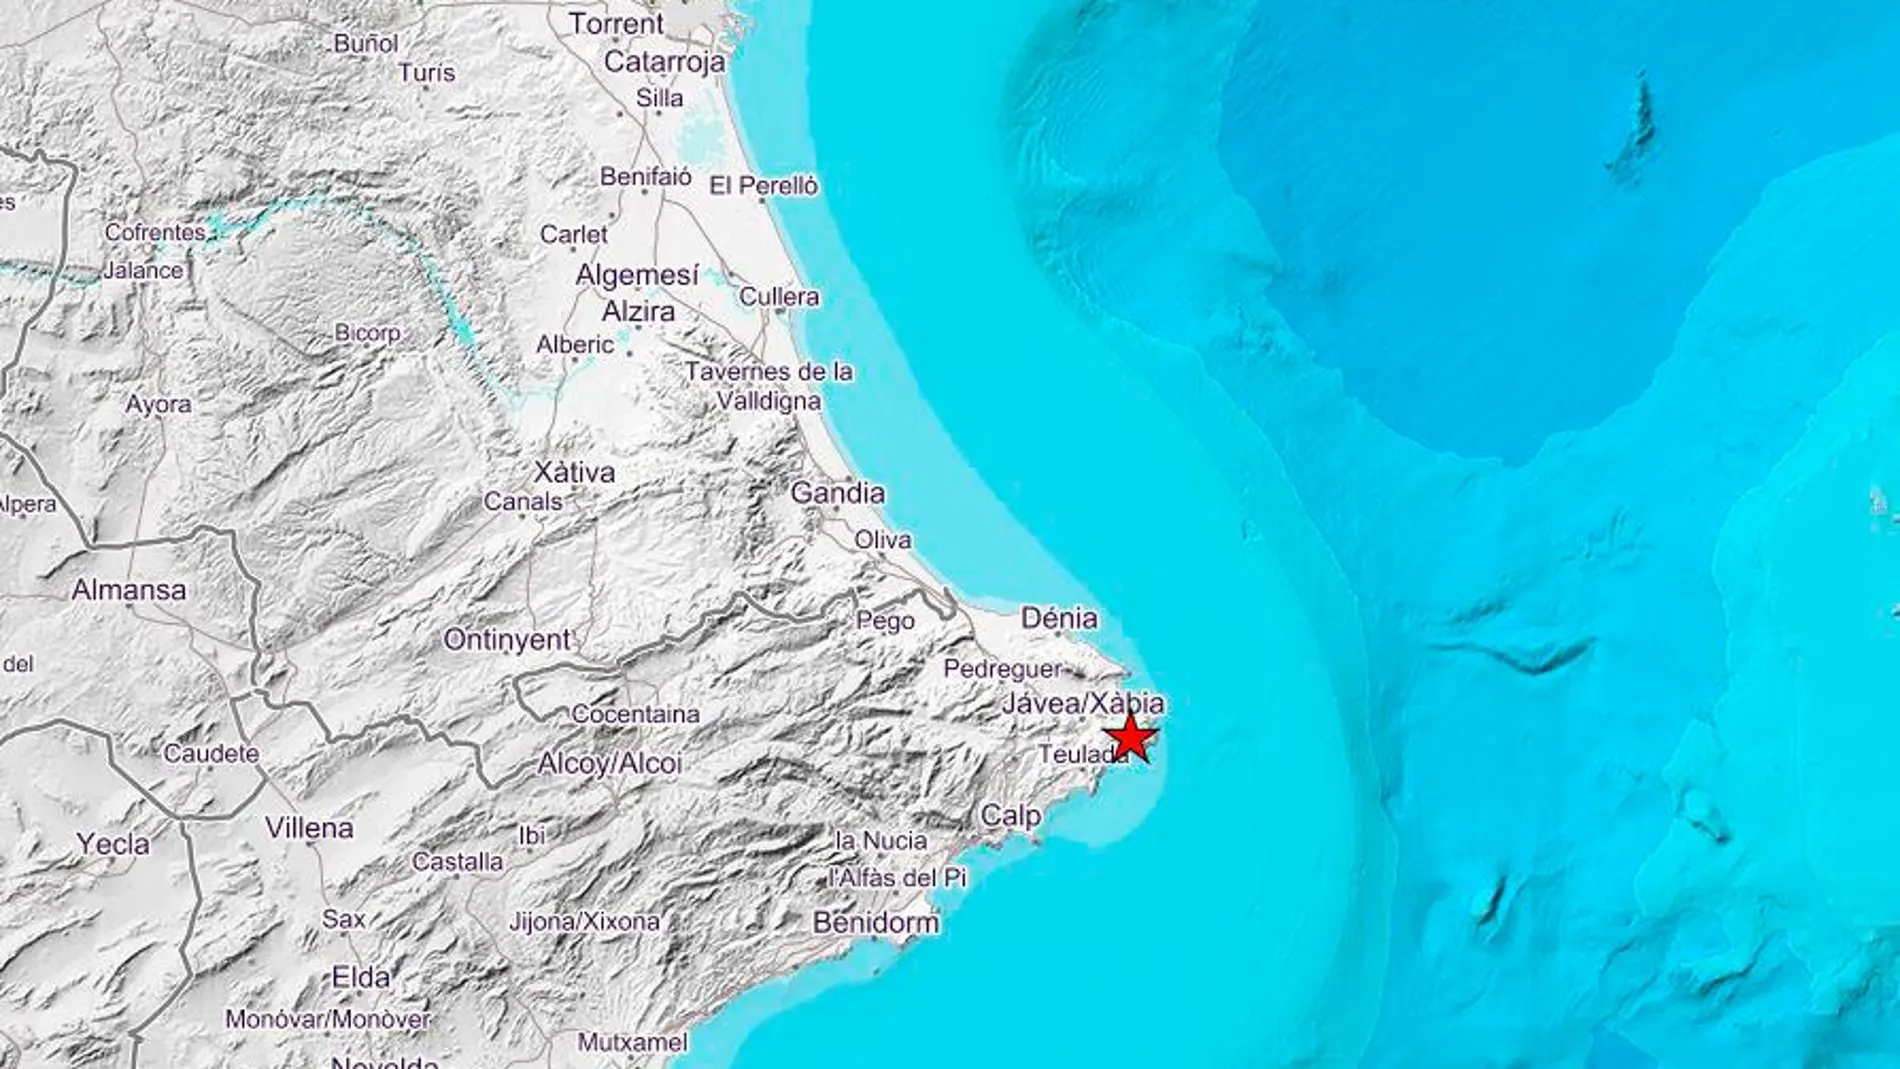 El epicentro del terremoto, que al parecer fue de baja intensidad, se ha situado a 3 km de Benitachell